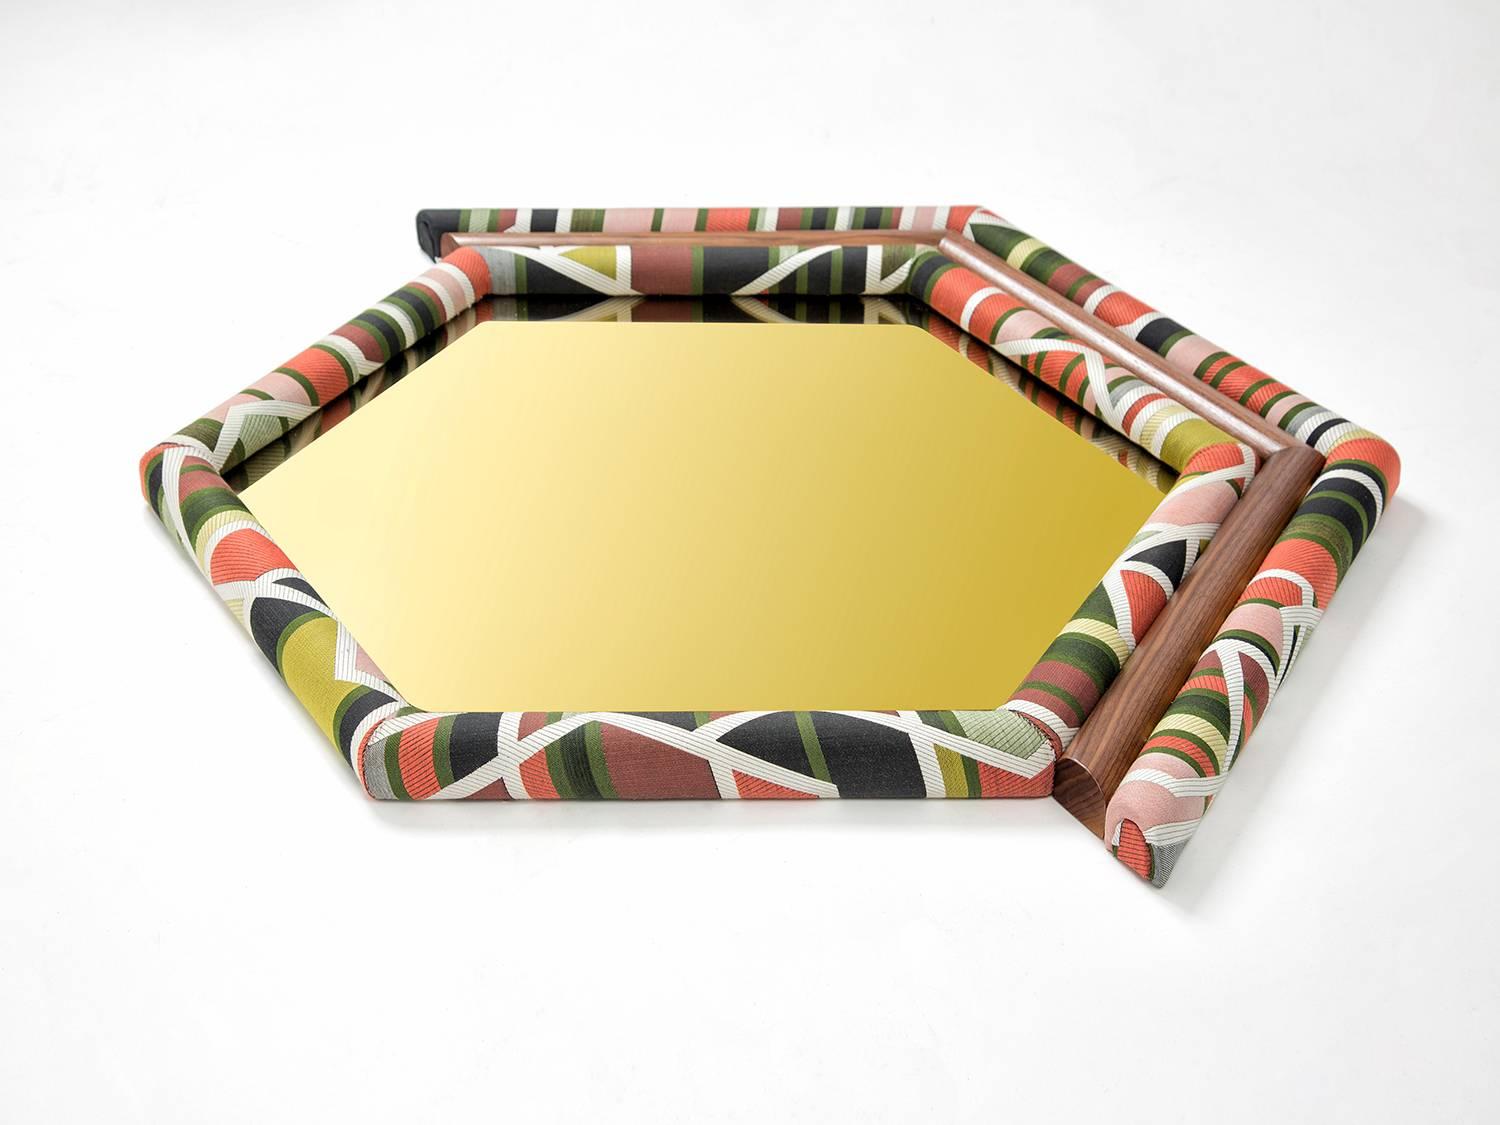 La nouvelle édition de Pontiac Hexagon est encadrée d'un tissu maharam à motifs géométriques, combiné à du noyer américain et à un miroir teinté d'or. La tapisserie a été coupée symétriquement et fabriquée à la main sur du bois et de la mousse.